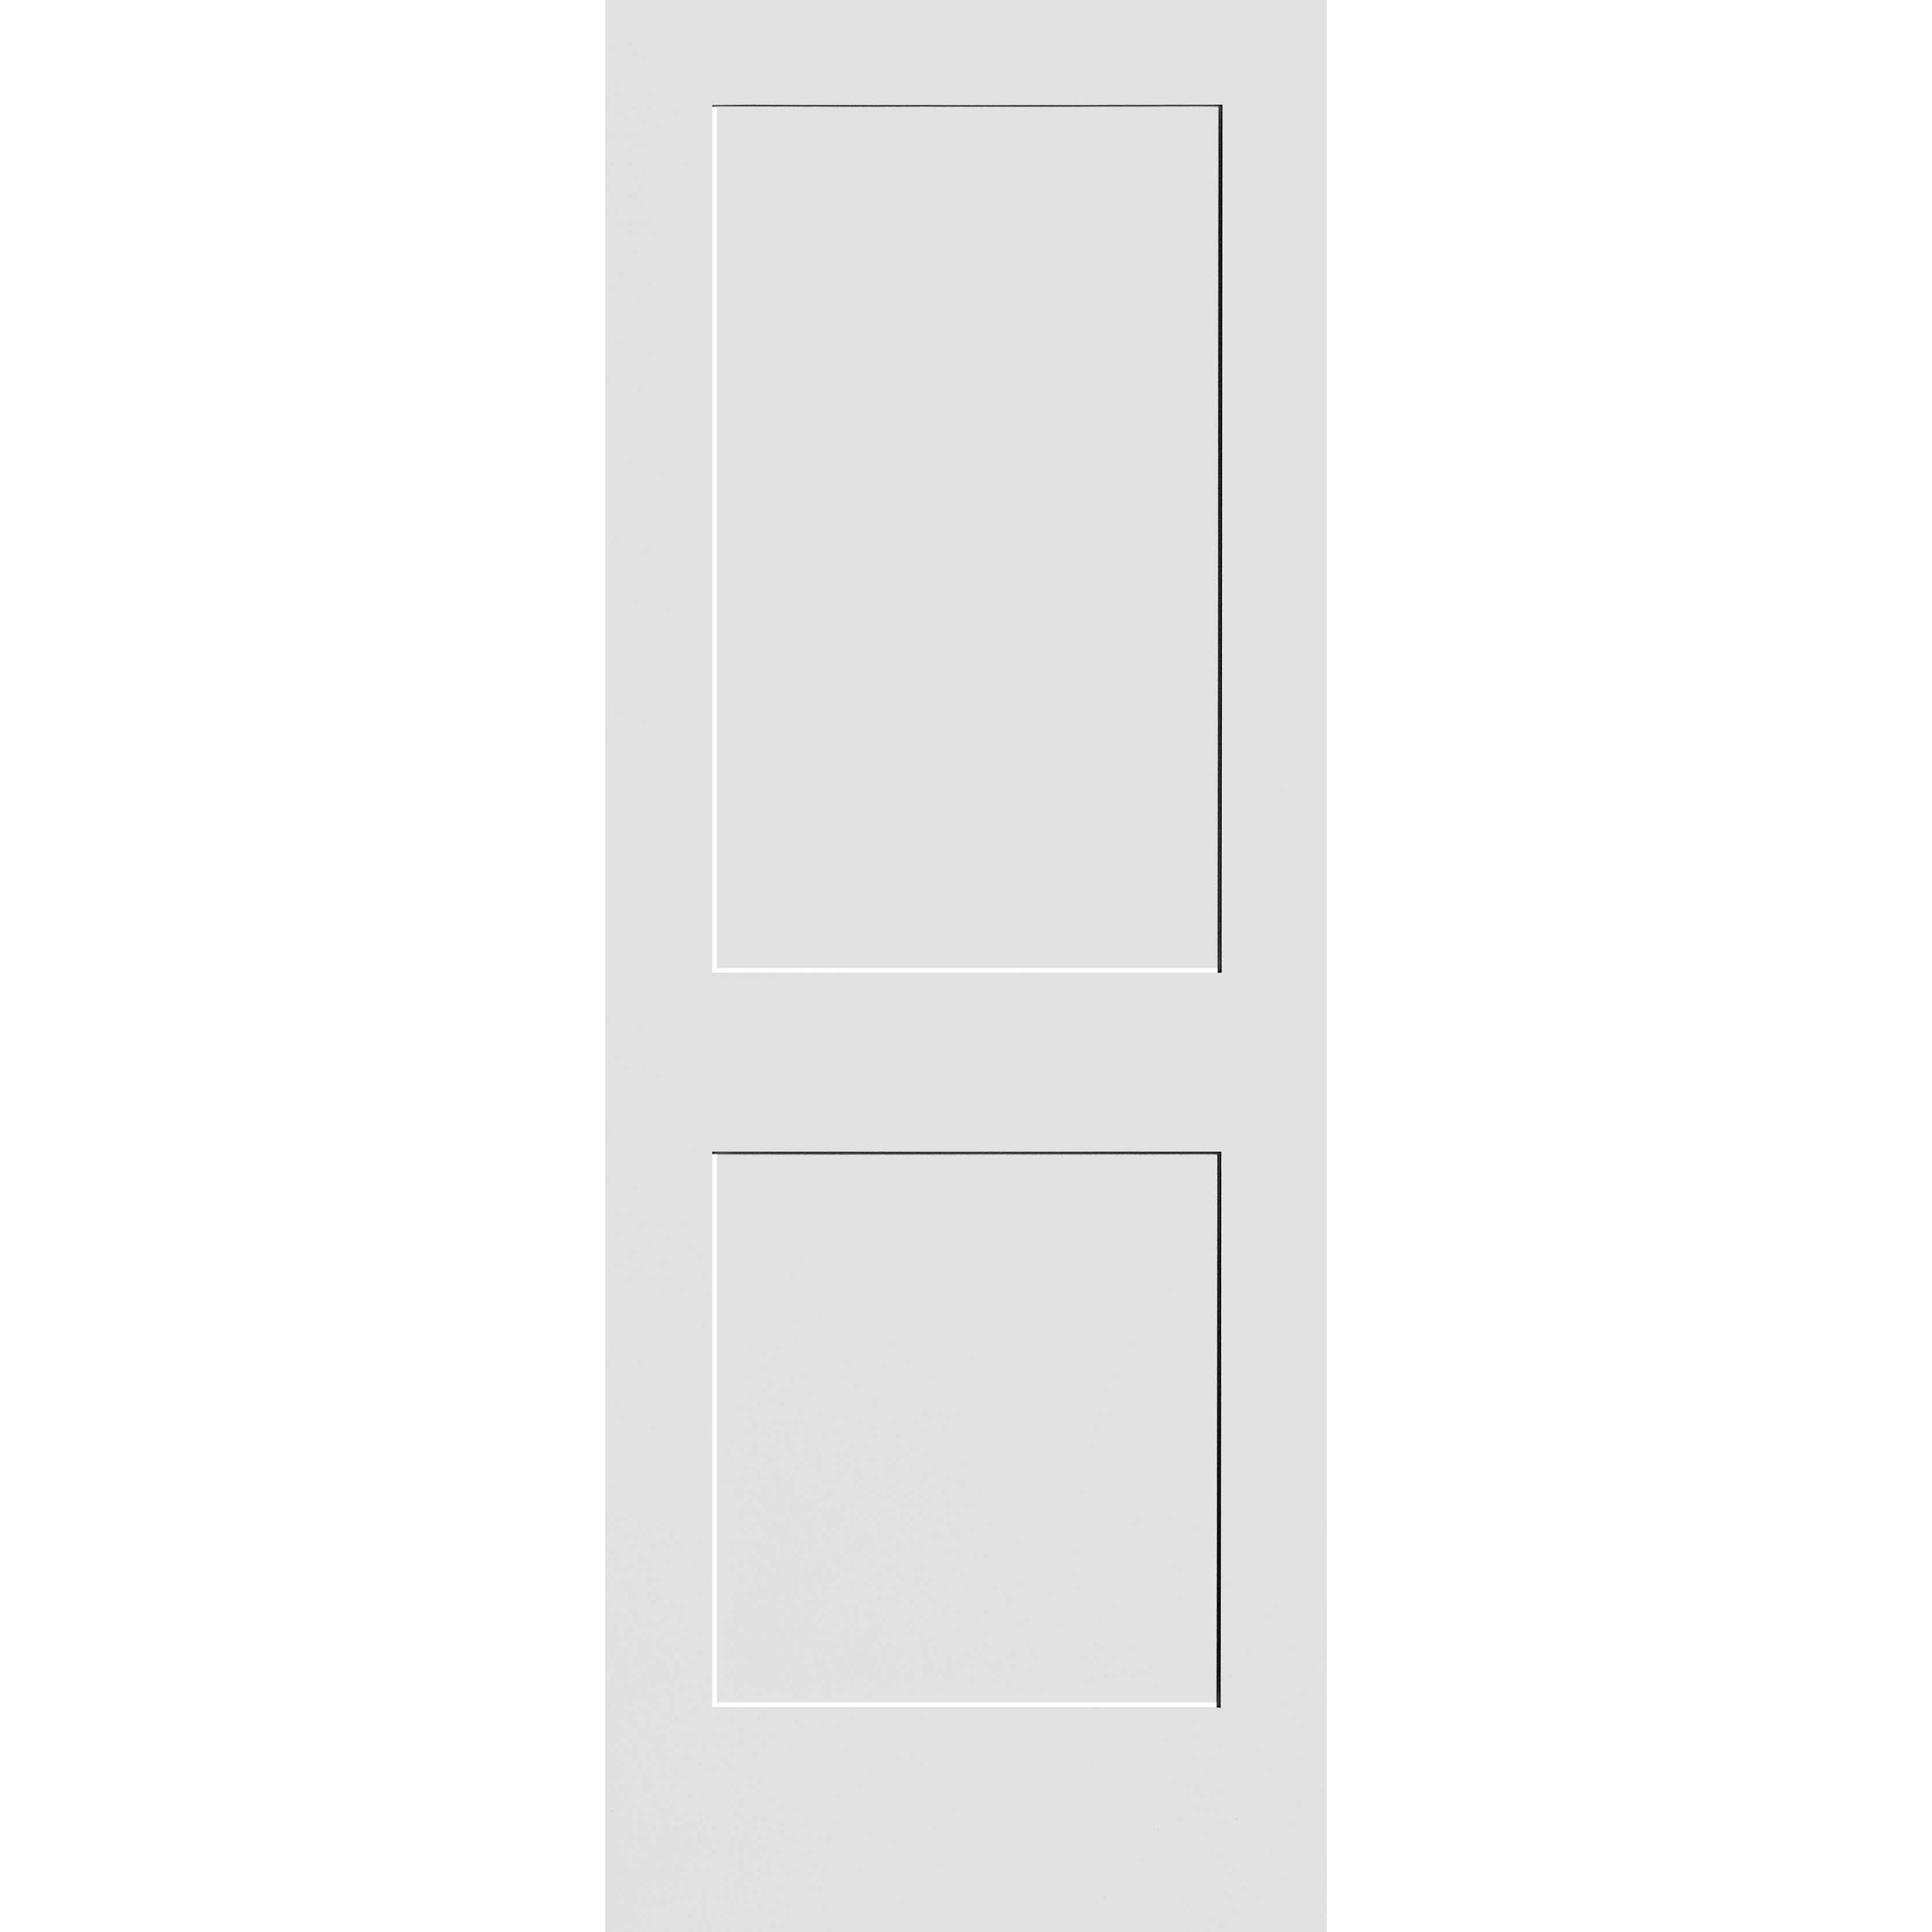 28X80 #8402 MDF PRIMED SHAKER PANEL INTERIOR DOOR